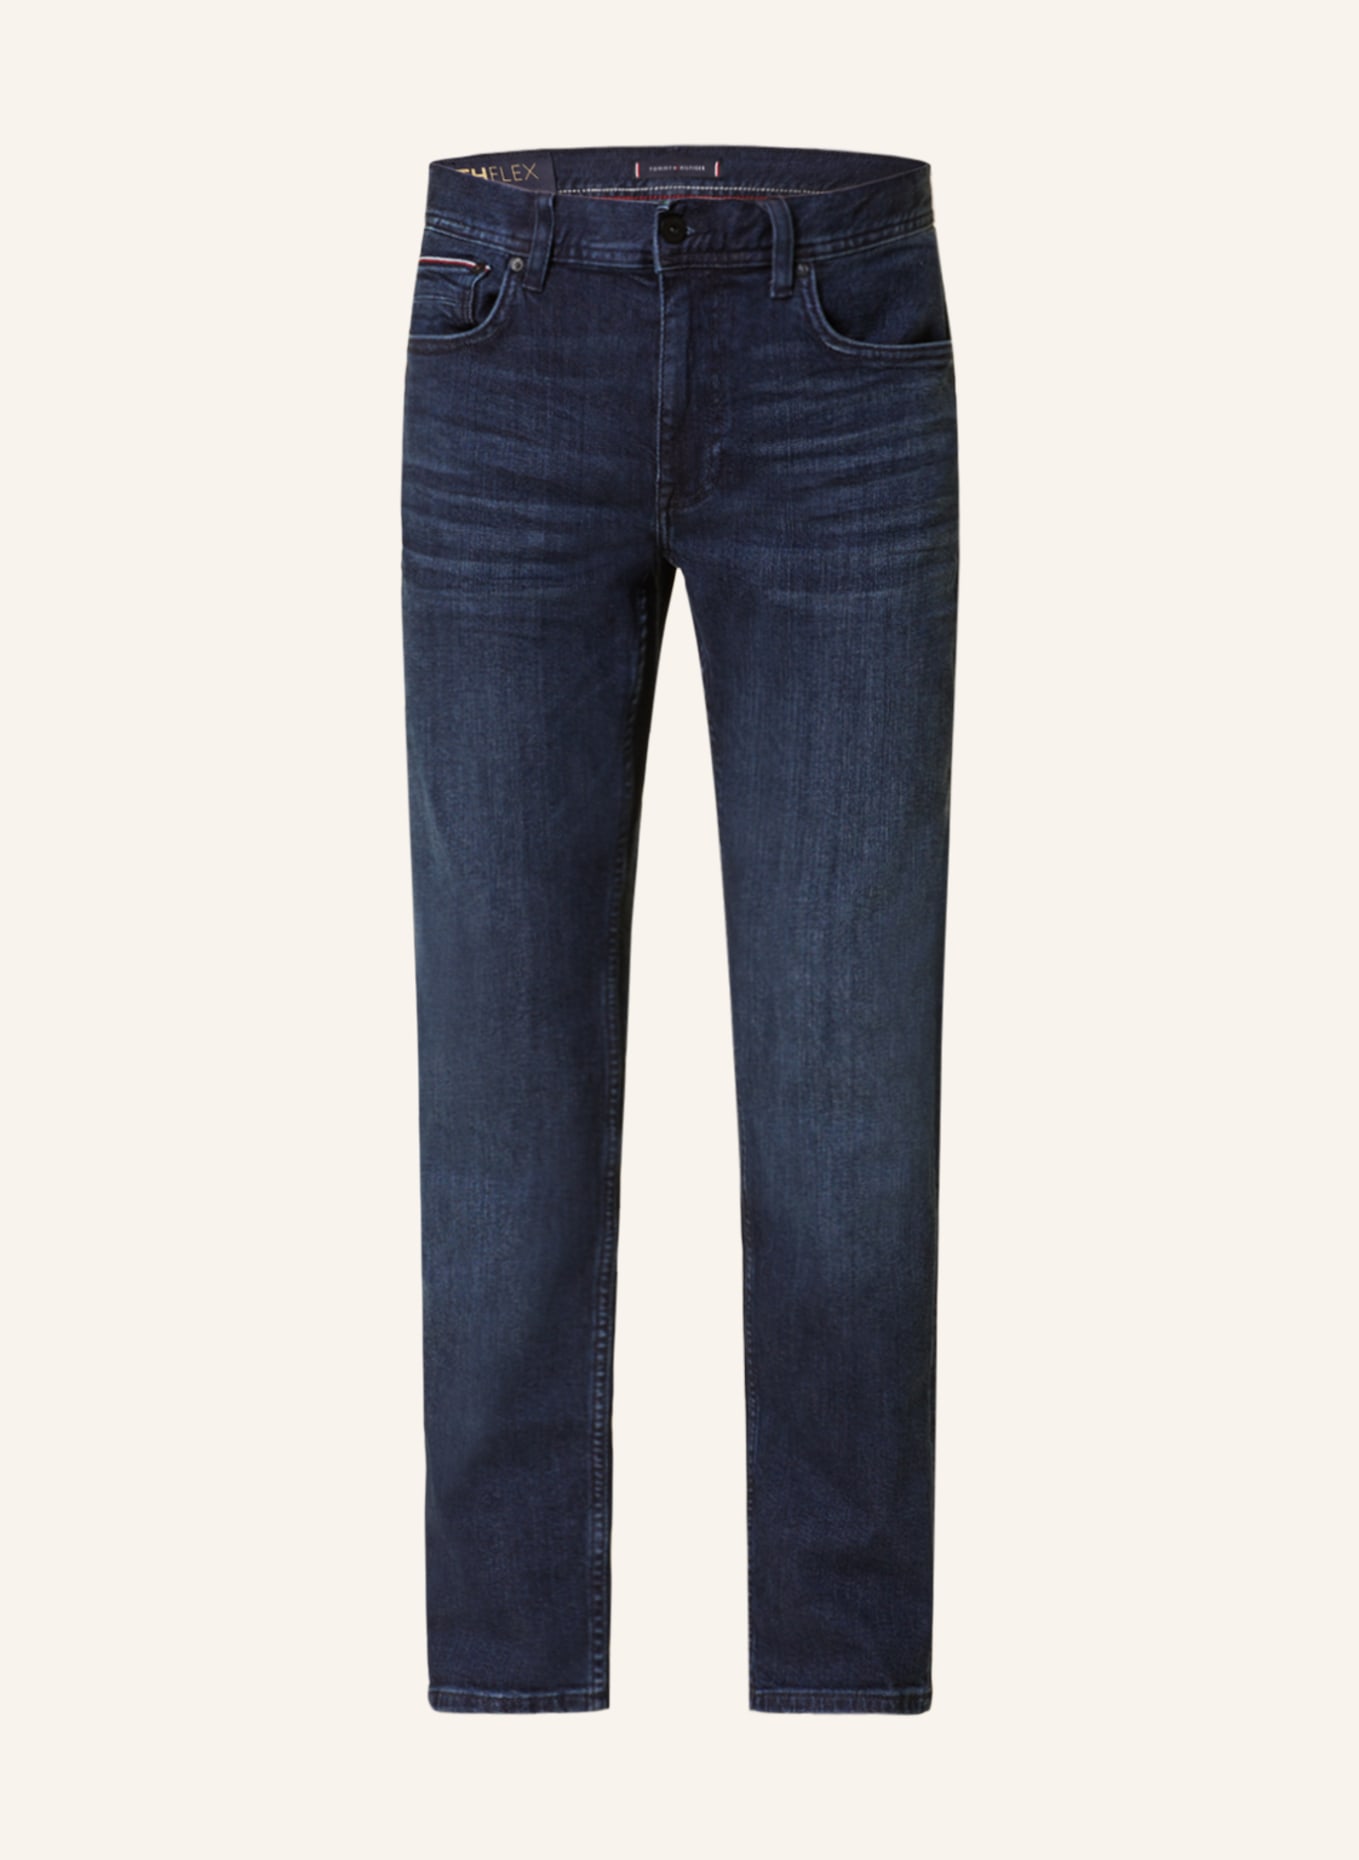 TOMMY HILFIGER Jeans DENTON Straight Fit, Farbe: 1BQ Orado Indigo (Bild 1)